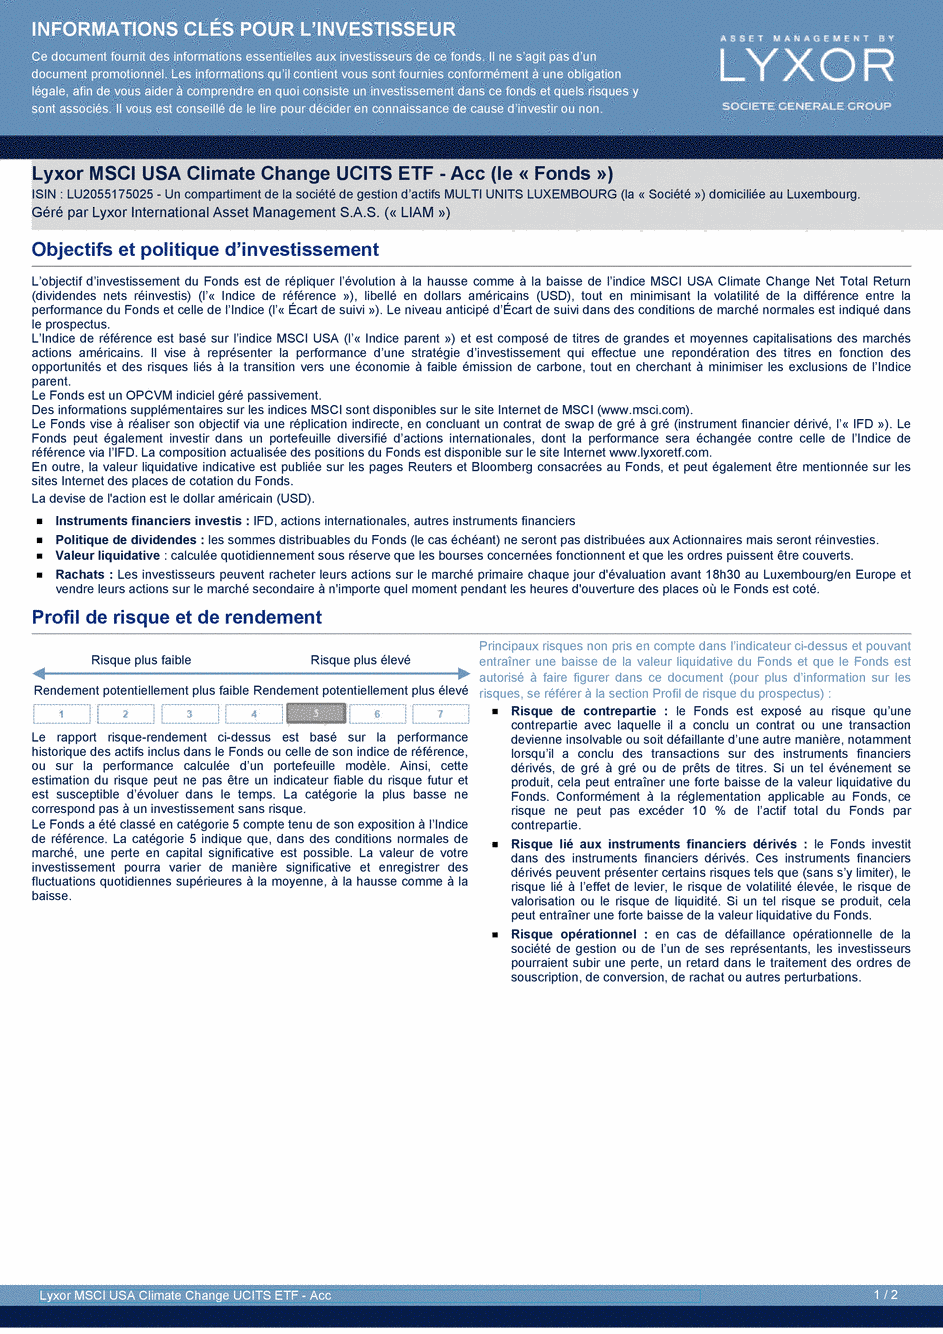 DICI Lyxor MSCI USA Climate Change UCITS ETF - Acc - 25/03/2020 - Français